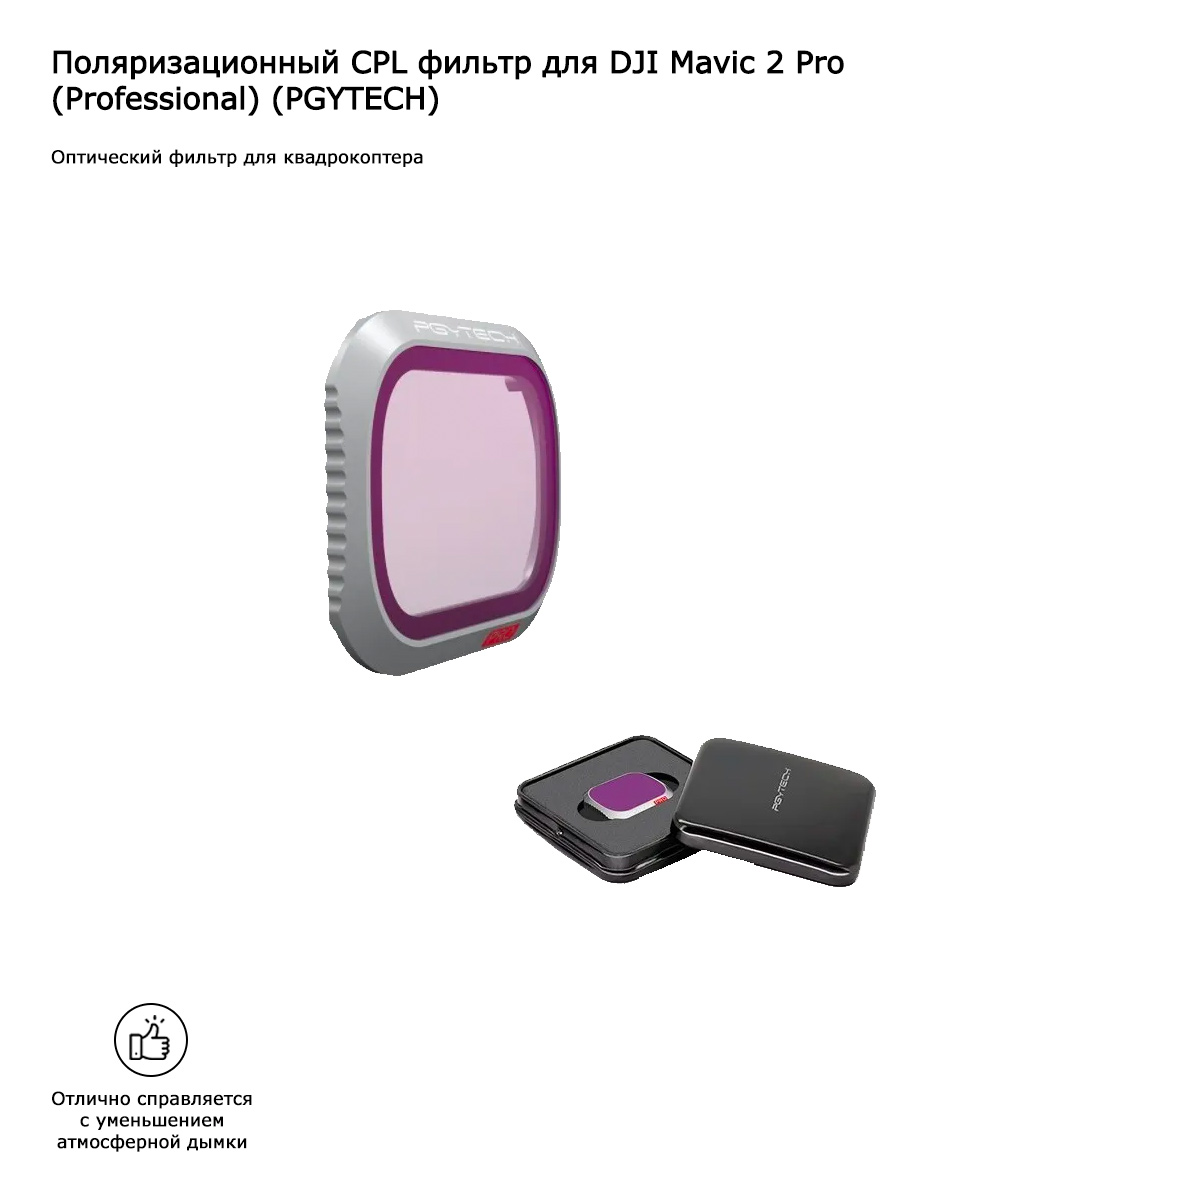 Поляризационный CPL фильтр для DJI Mavic 2 Pro (Professional) (PGYTECH) (P-HAH-021)